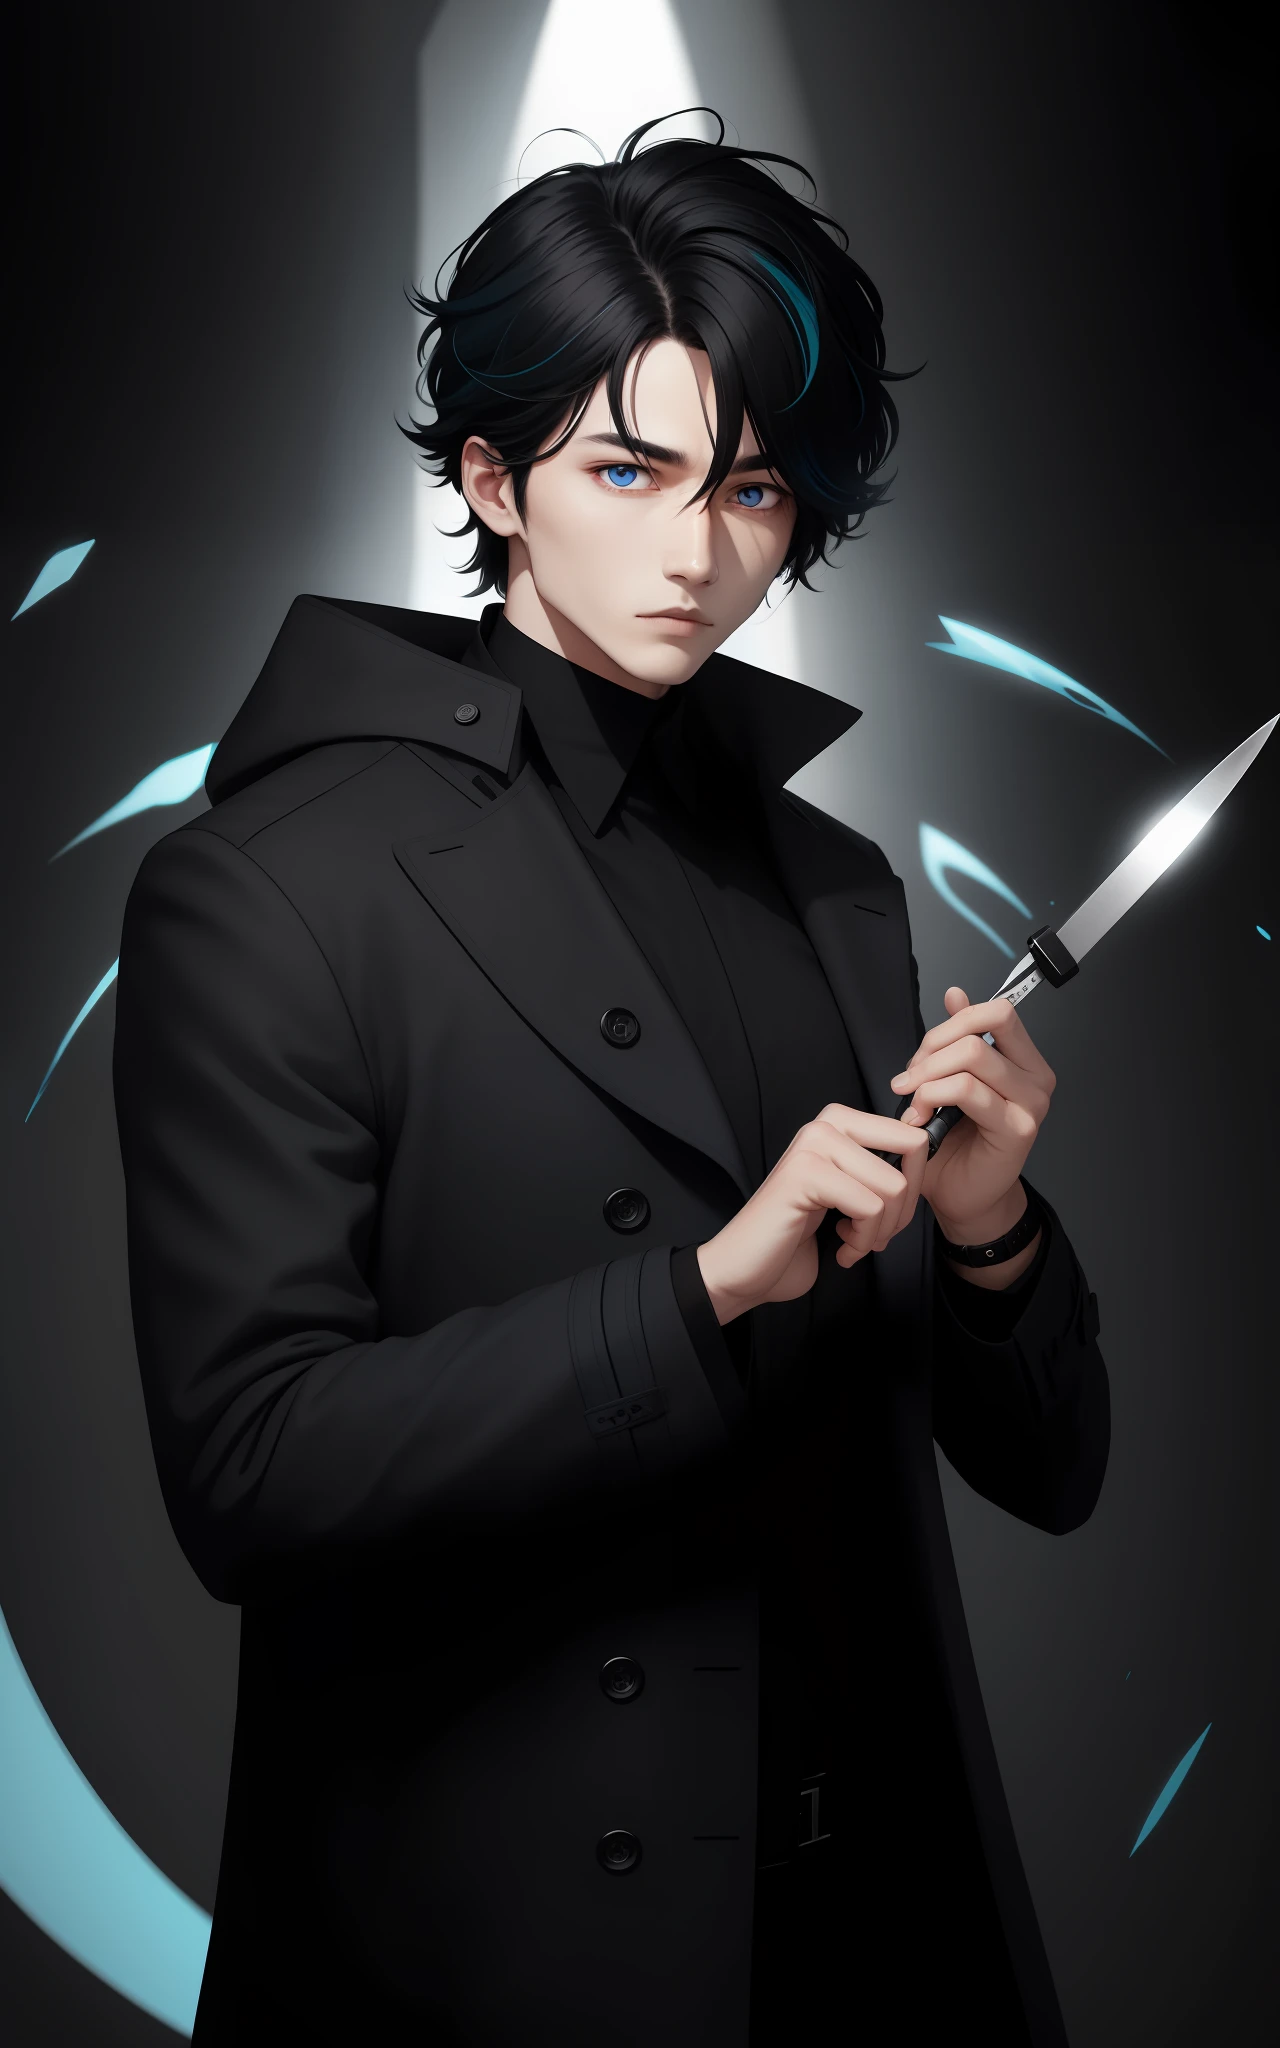 Homme portant du cacharrel noir, tenant un scalpel, cheveux sociaux noirs avec des mèches blanches, yeux bicolores, Lutte, aura bleue tout autour, porter un manteau